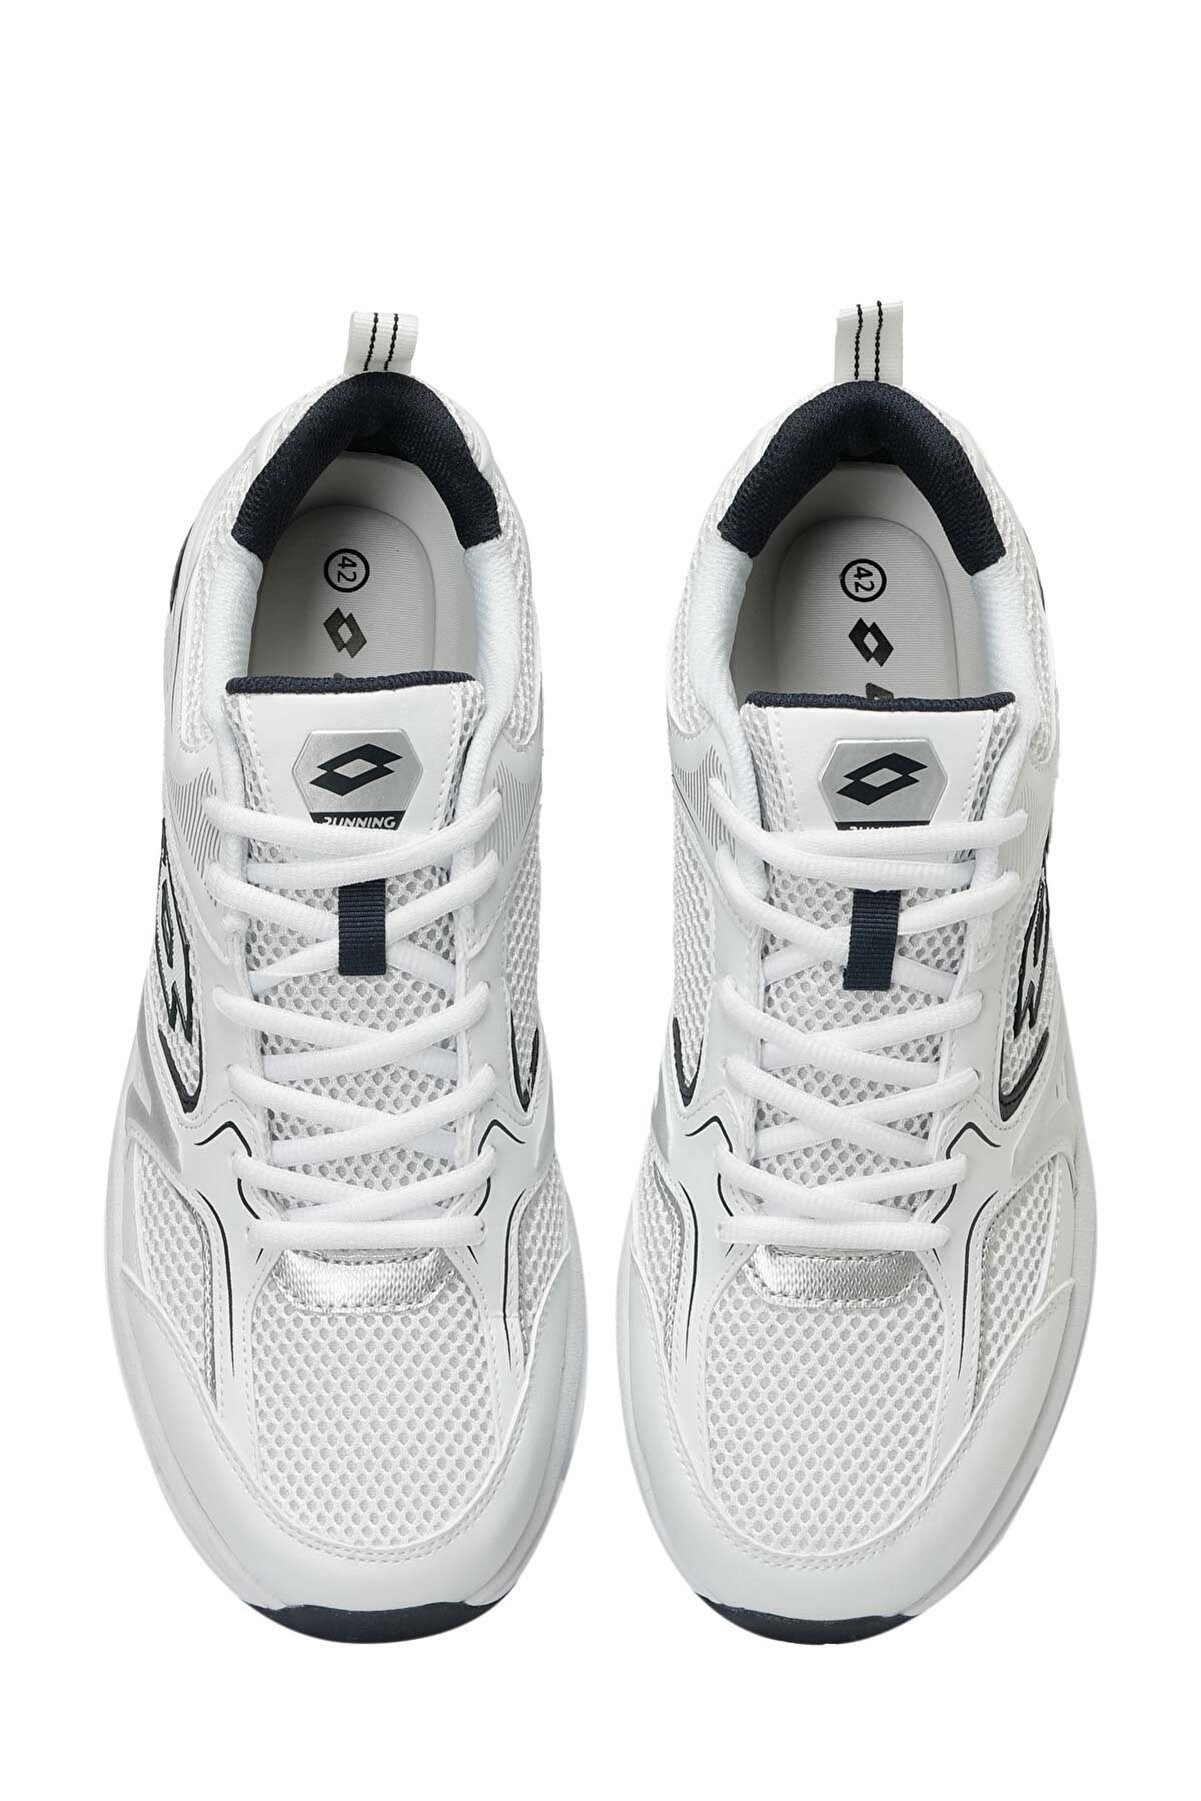 ATHENS 4FX Beyaz-Lacivert Erkek Spor Ayakkabı 